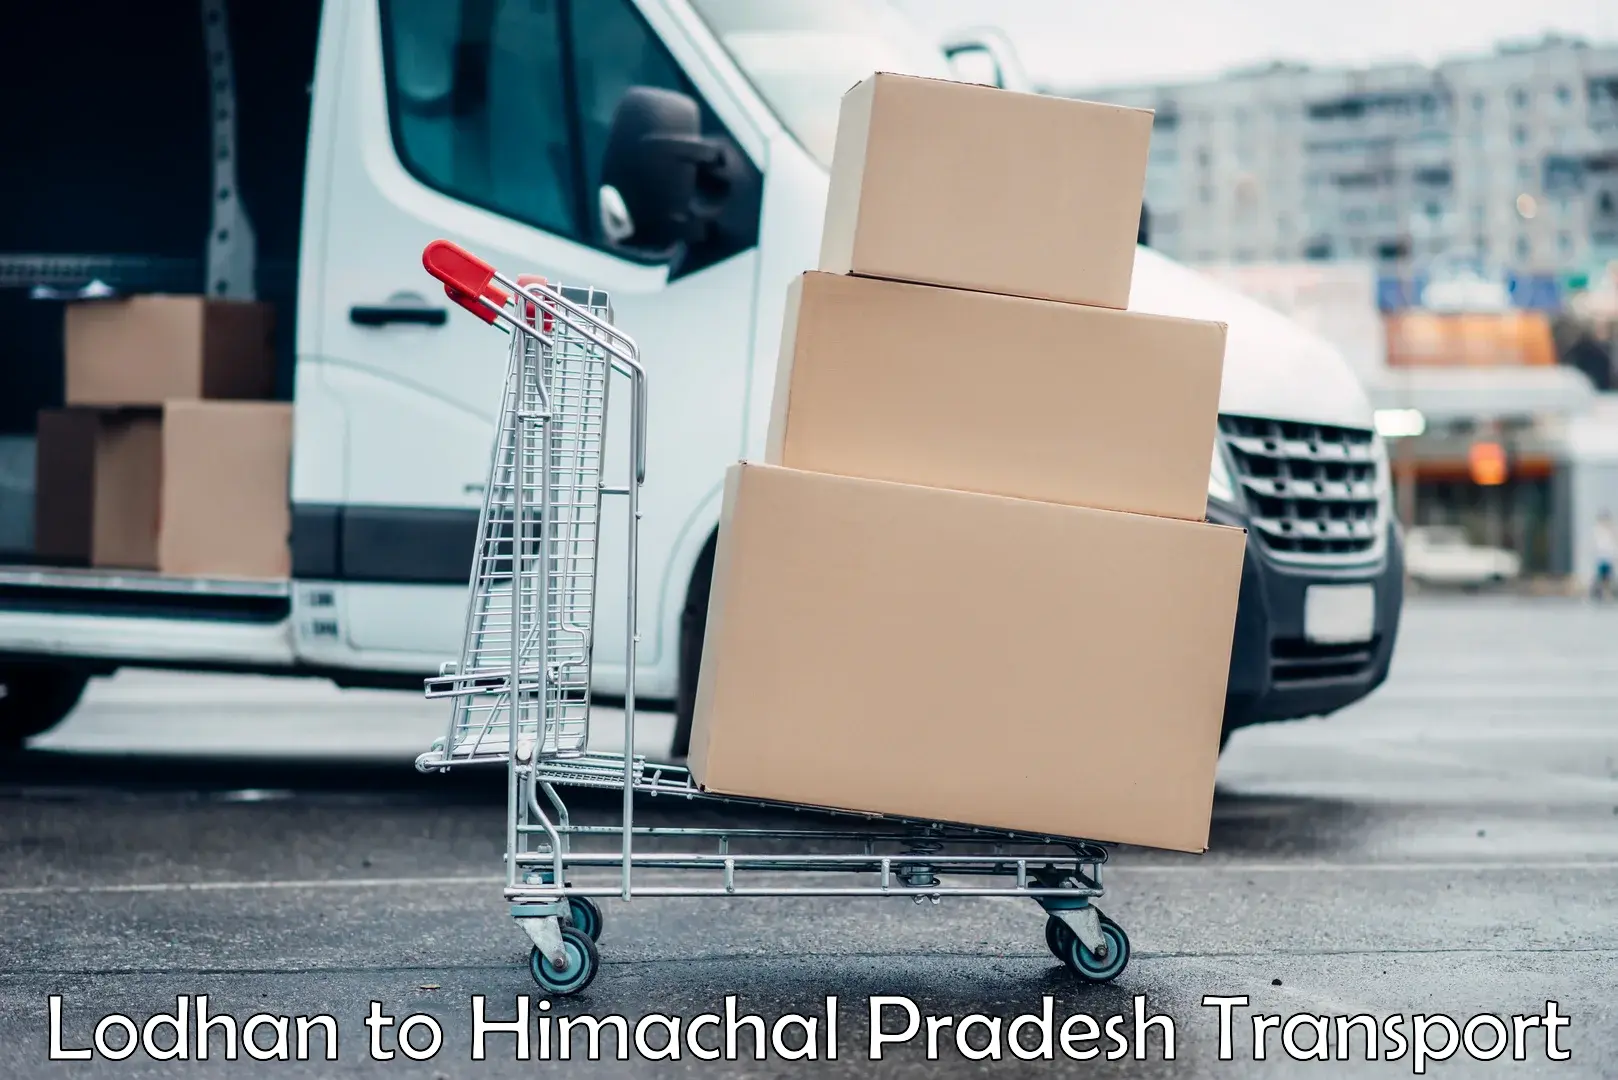 Shipping partner Lodhan to Himachal Pradesh